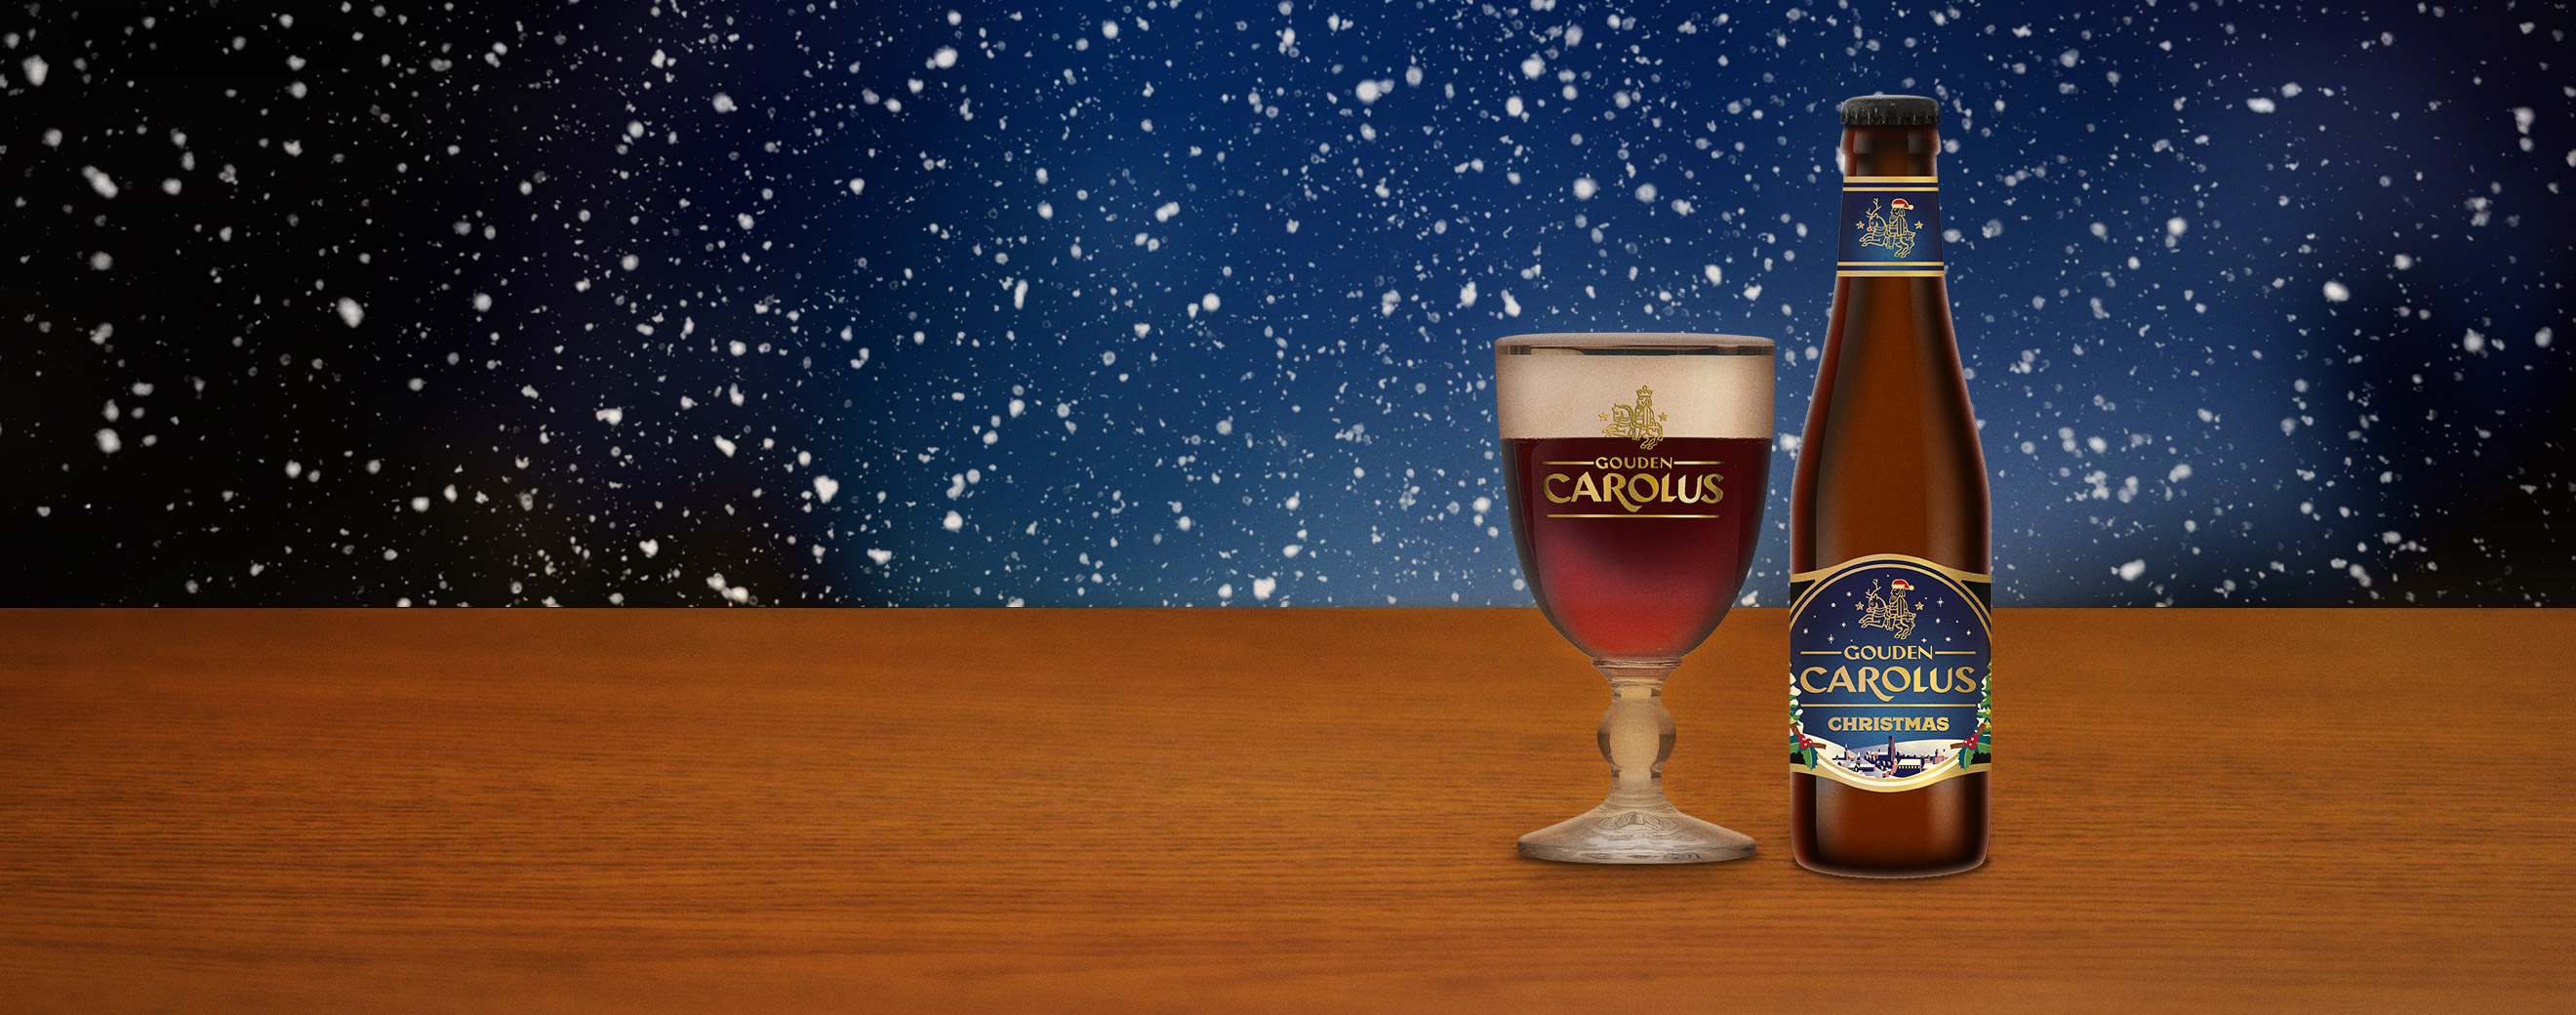 Gouden Carolus Christmas met glas